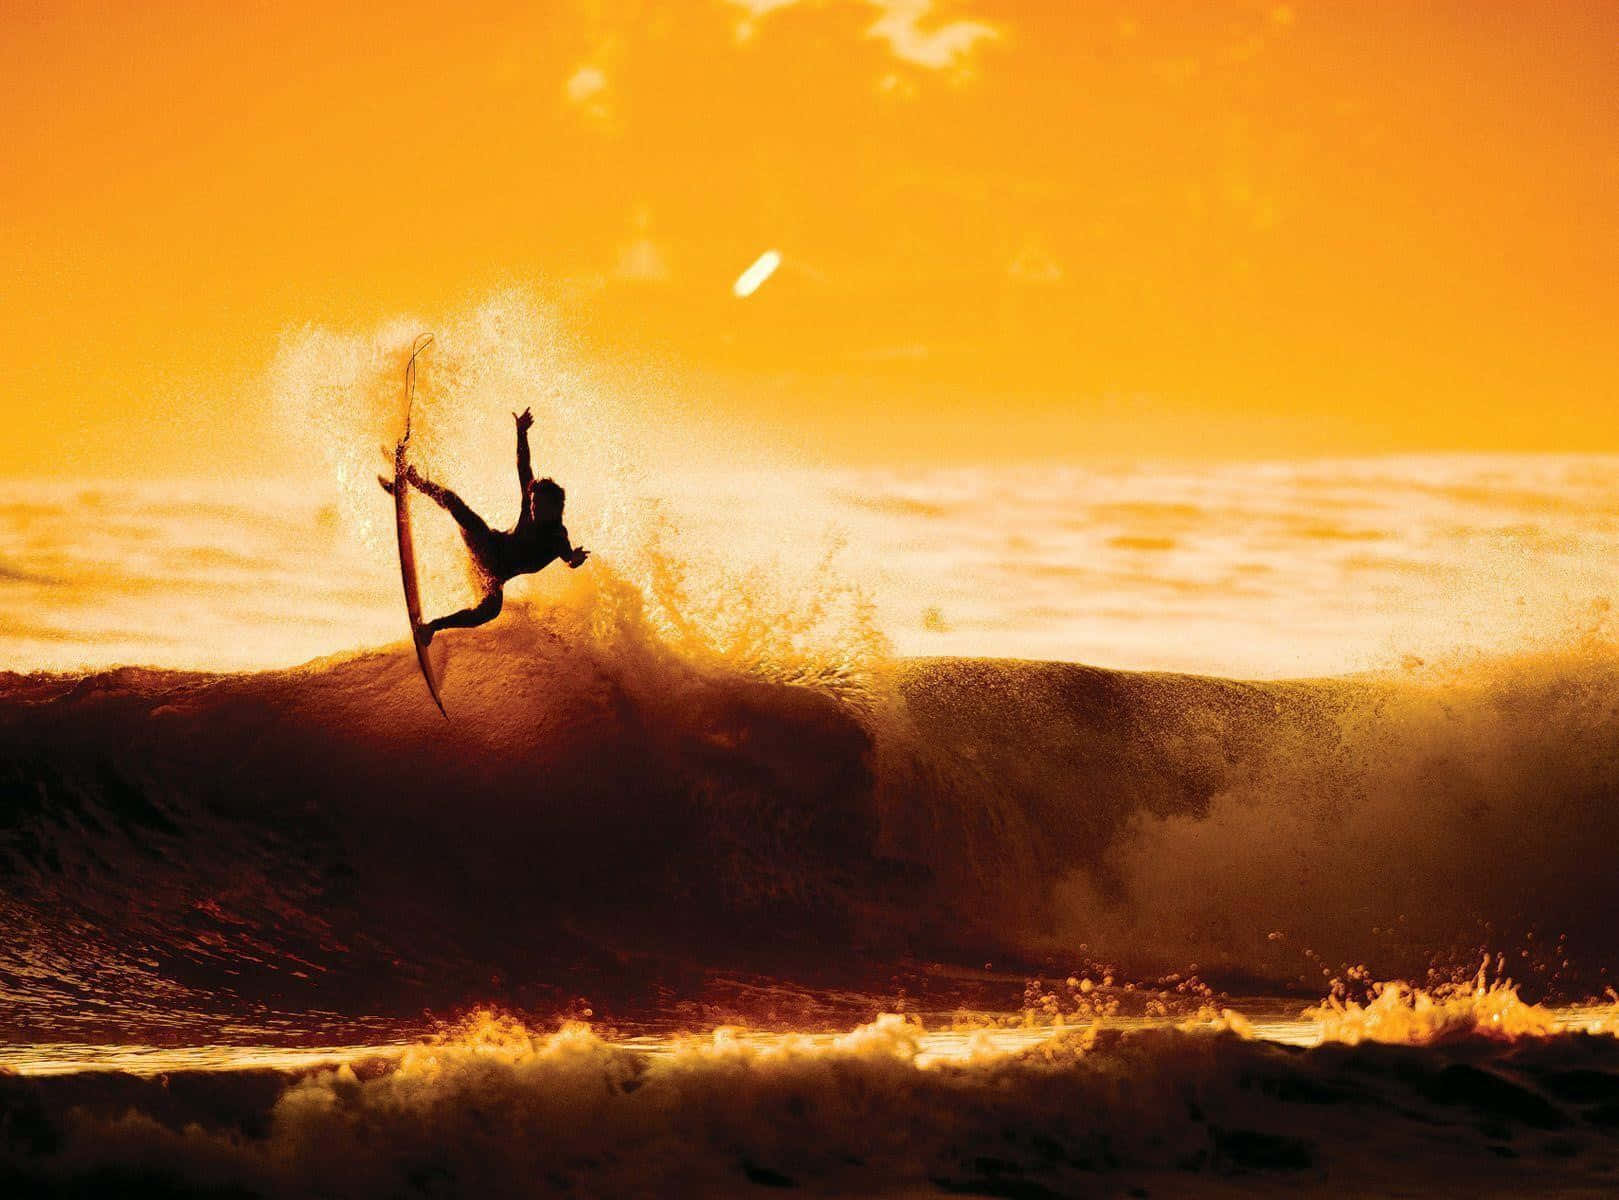 Dieserprofessionelle Surfer Steht Kurz Davor, Die Wellen Einer Strand In Hawaii Zu Reiten.